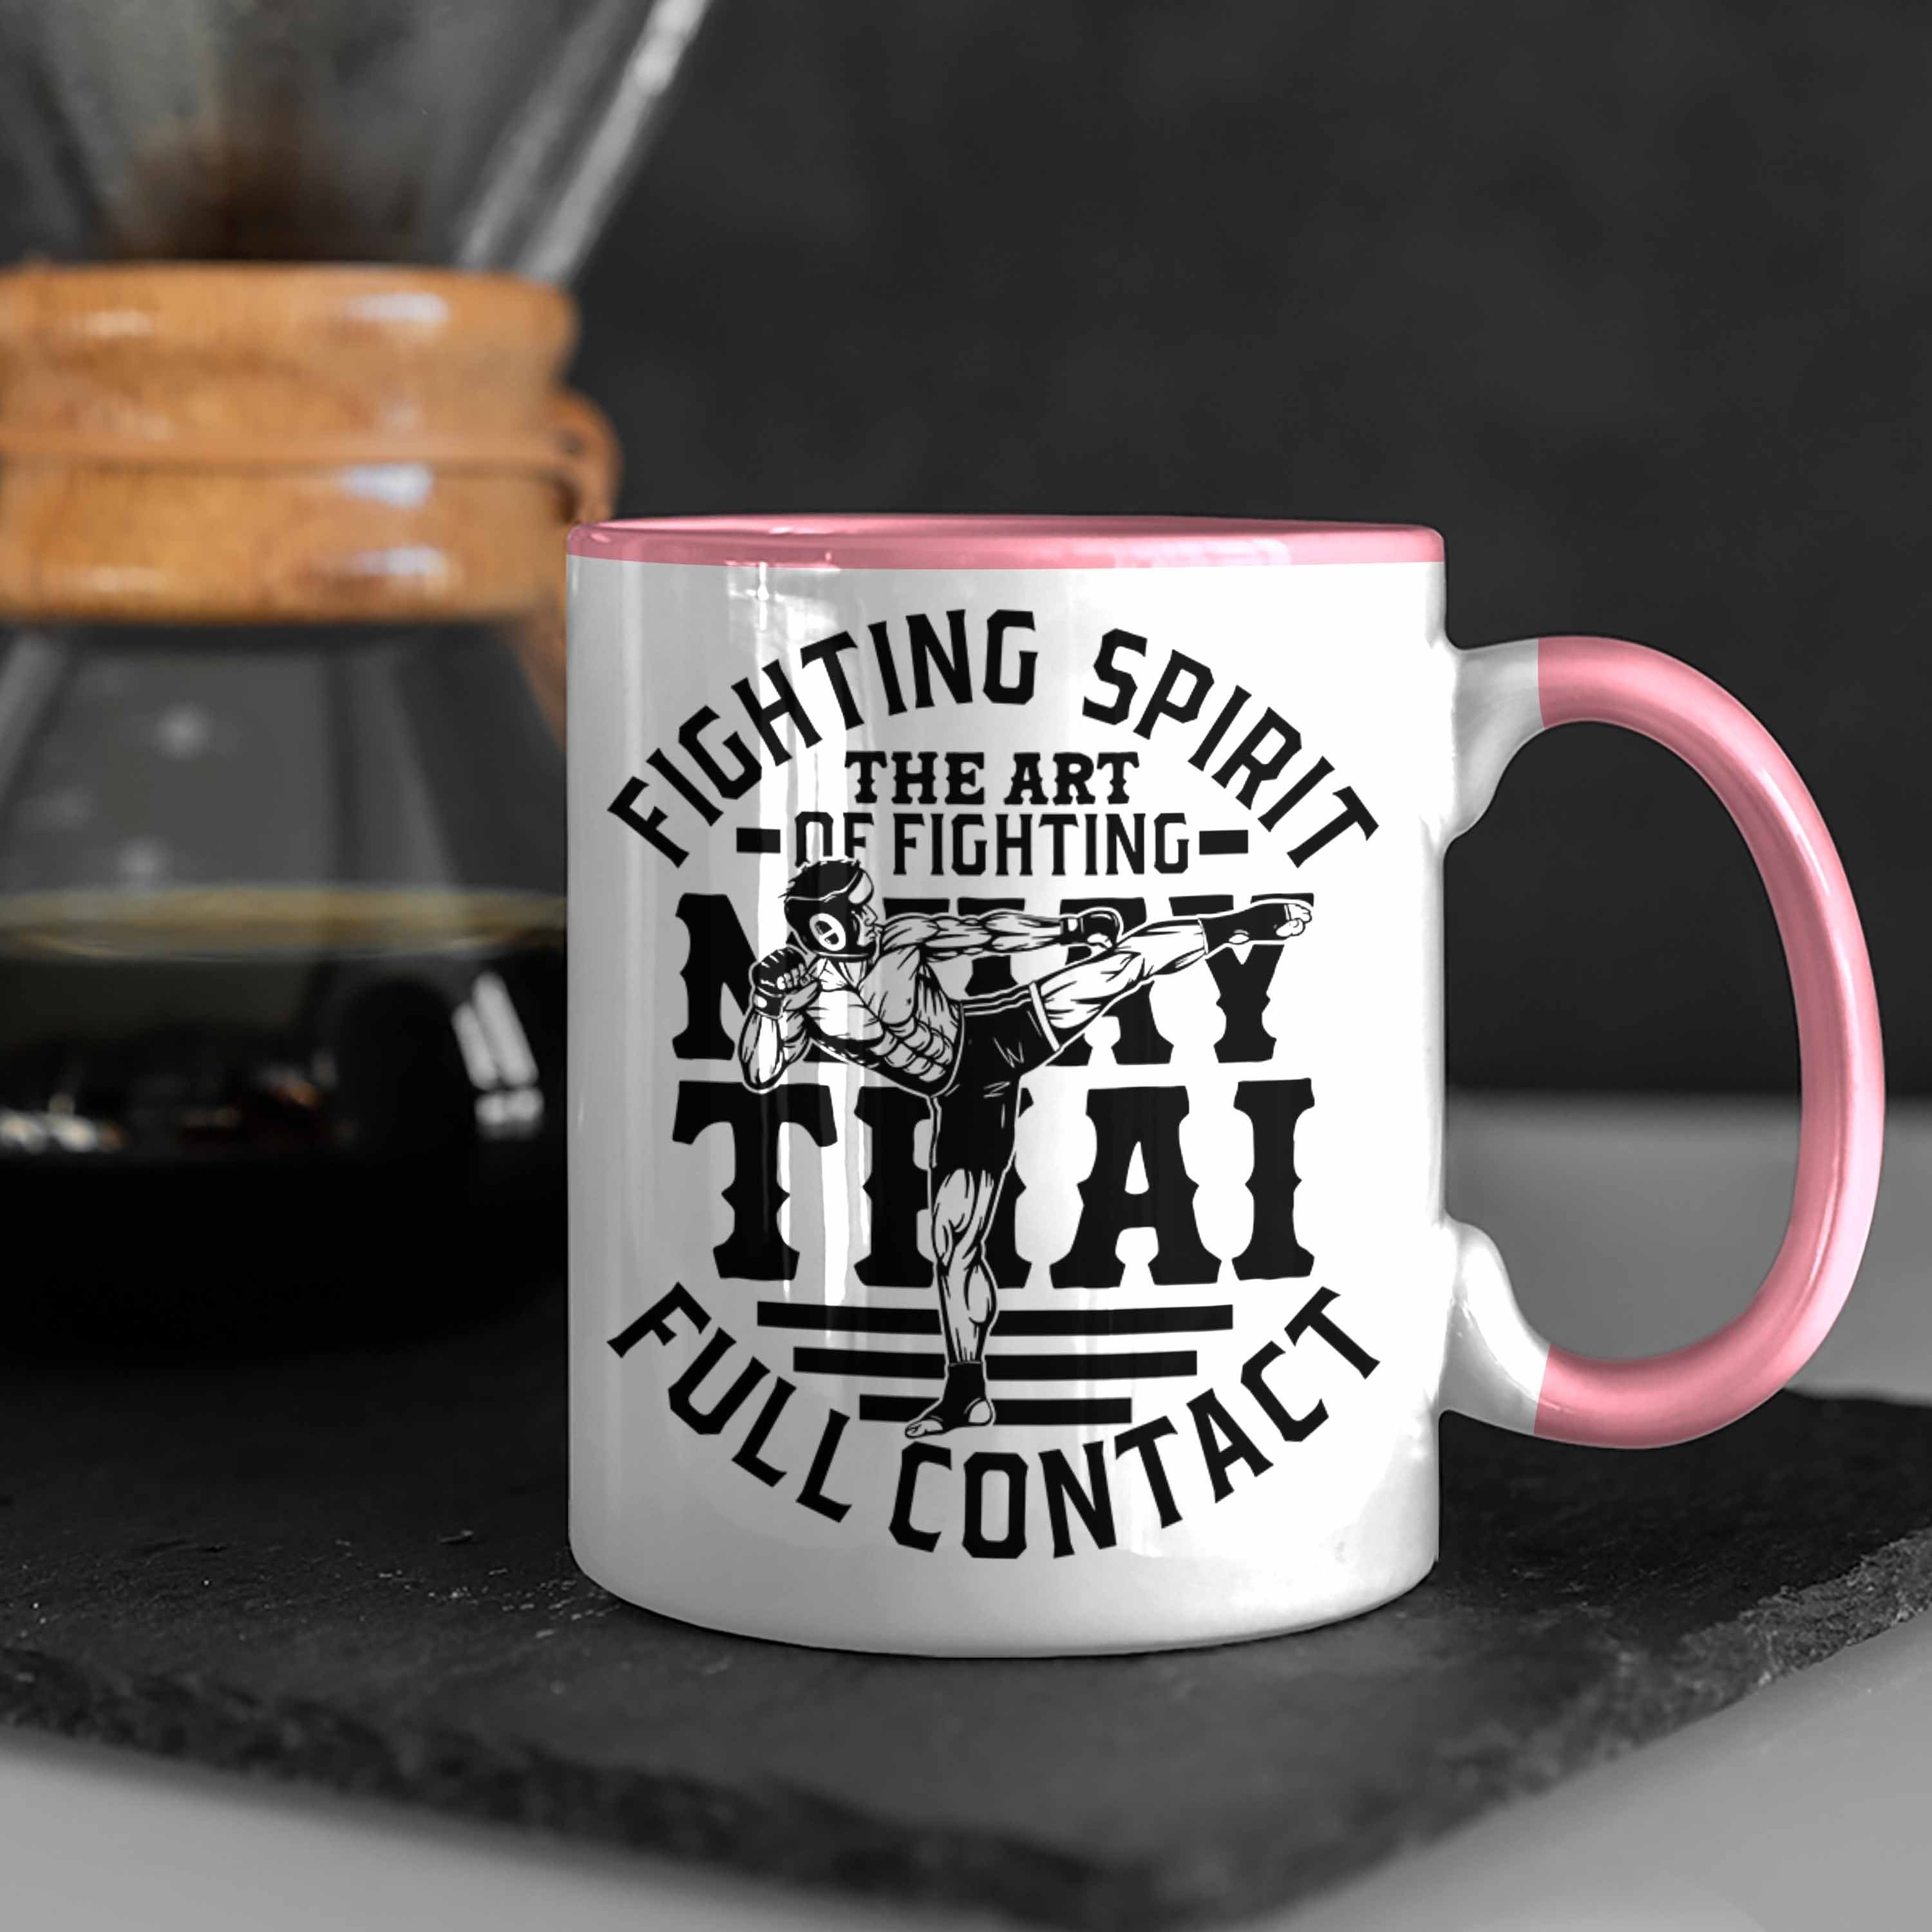 Thai Rosa Muay Thai-Kämpfer Trendation Spiri Muay Tasse Geschenk Geschenkidee Tasse Fighting